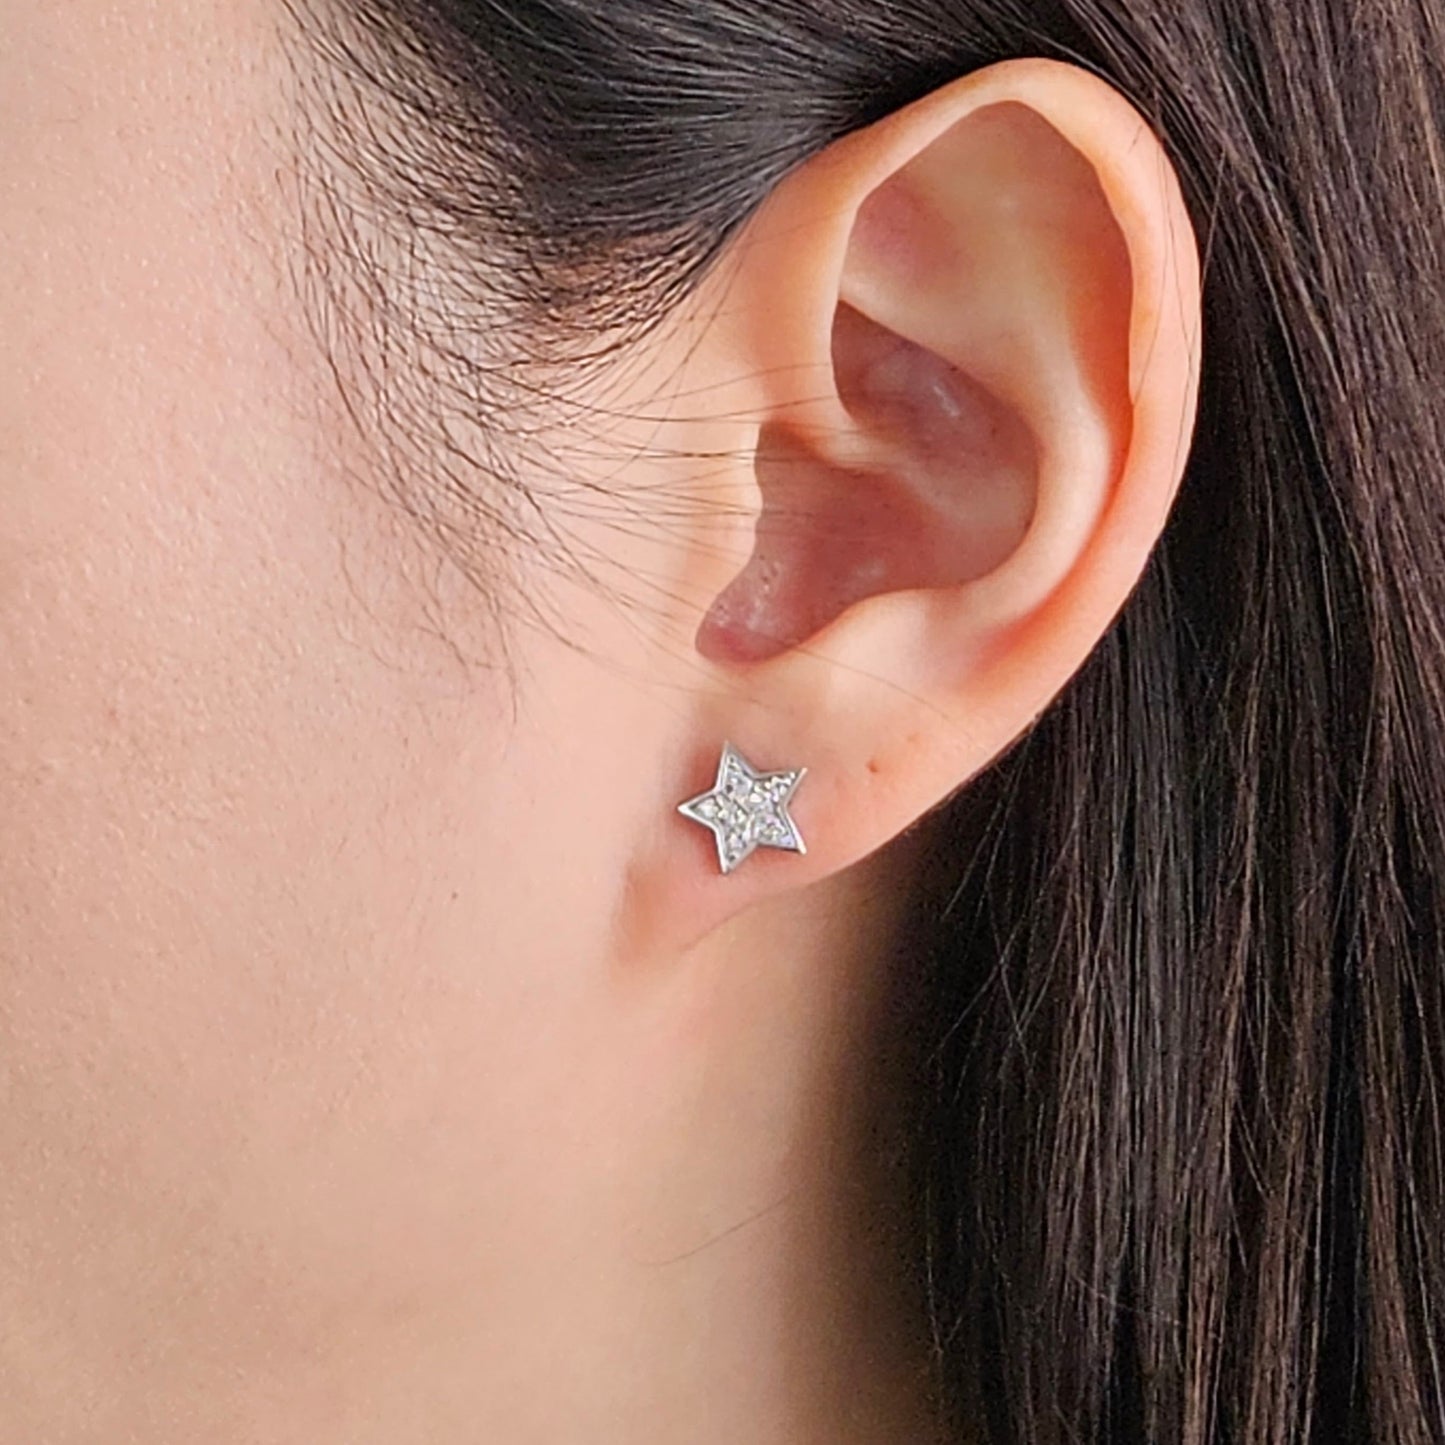 Diamond Star Earrings/ Star Stud Earrings/ 100% Natural Diamonds Star Earrings/ Anniversary gift